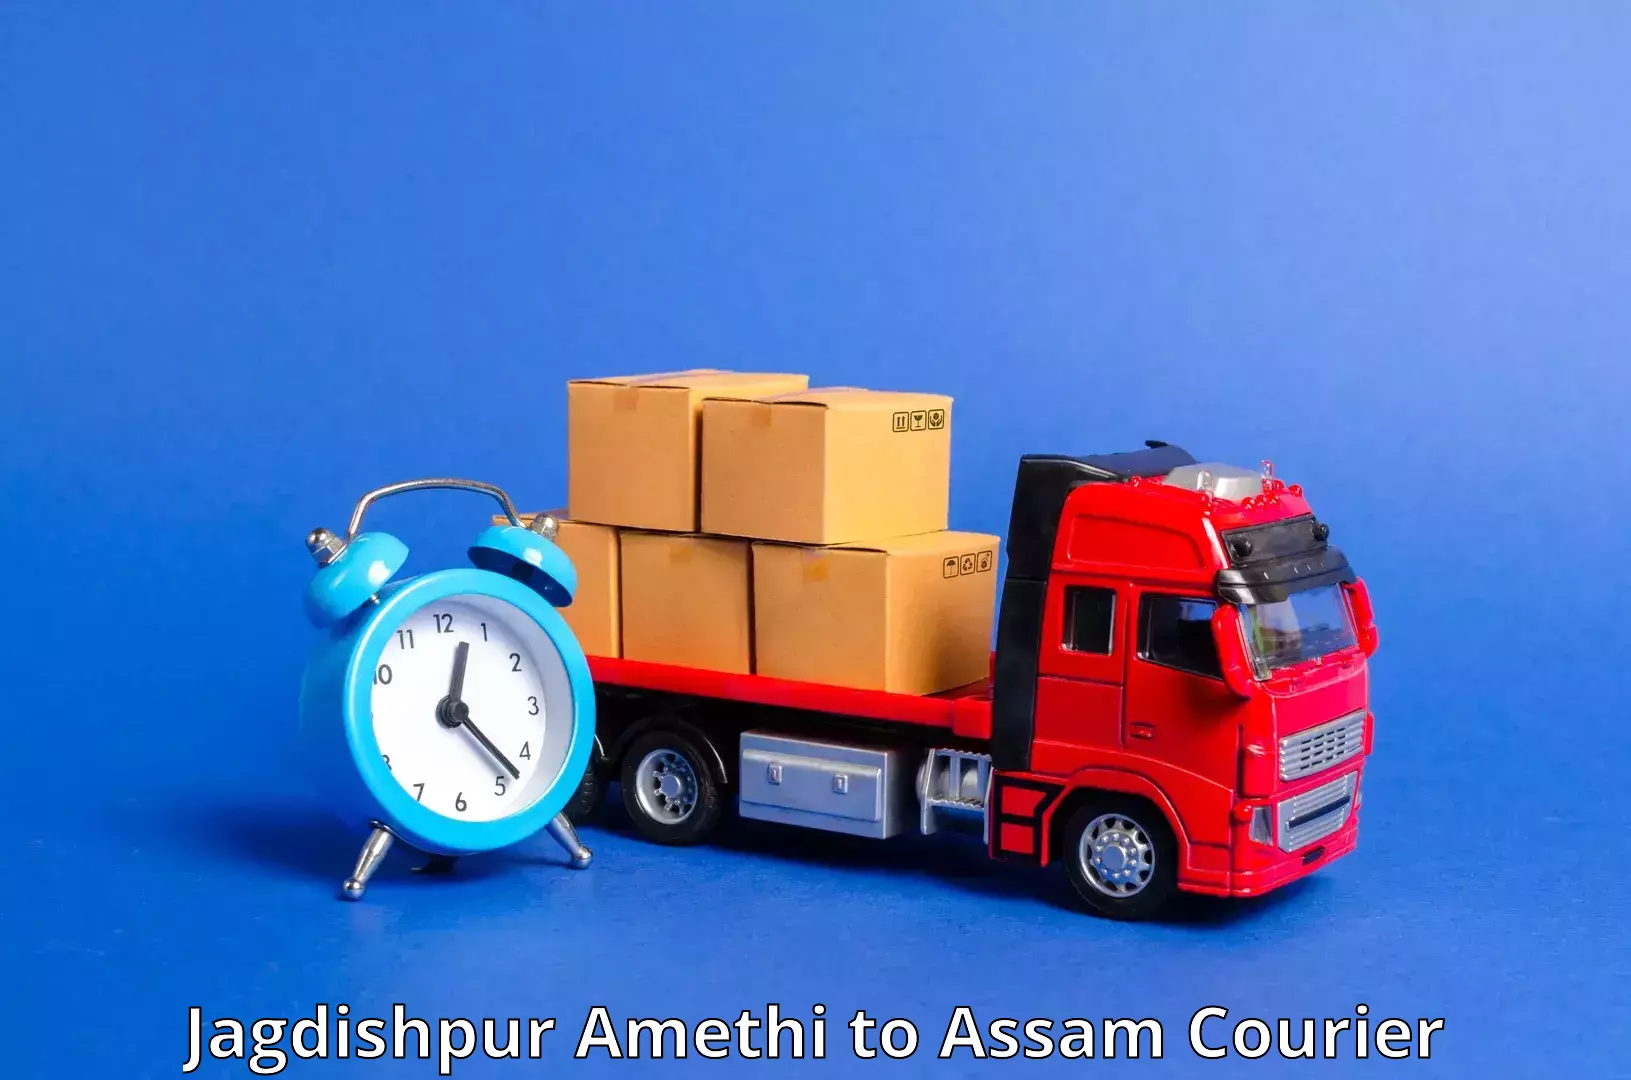 Reliable logistics providers Jagdishpur Amethi to Pathsala